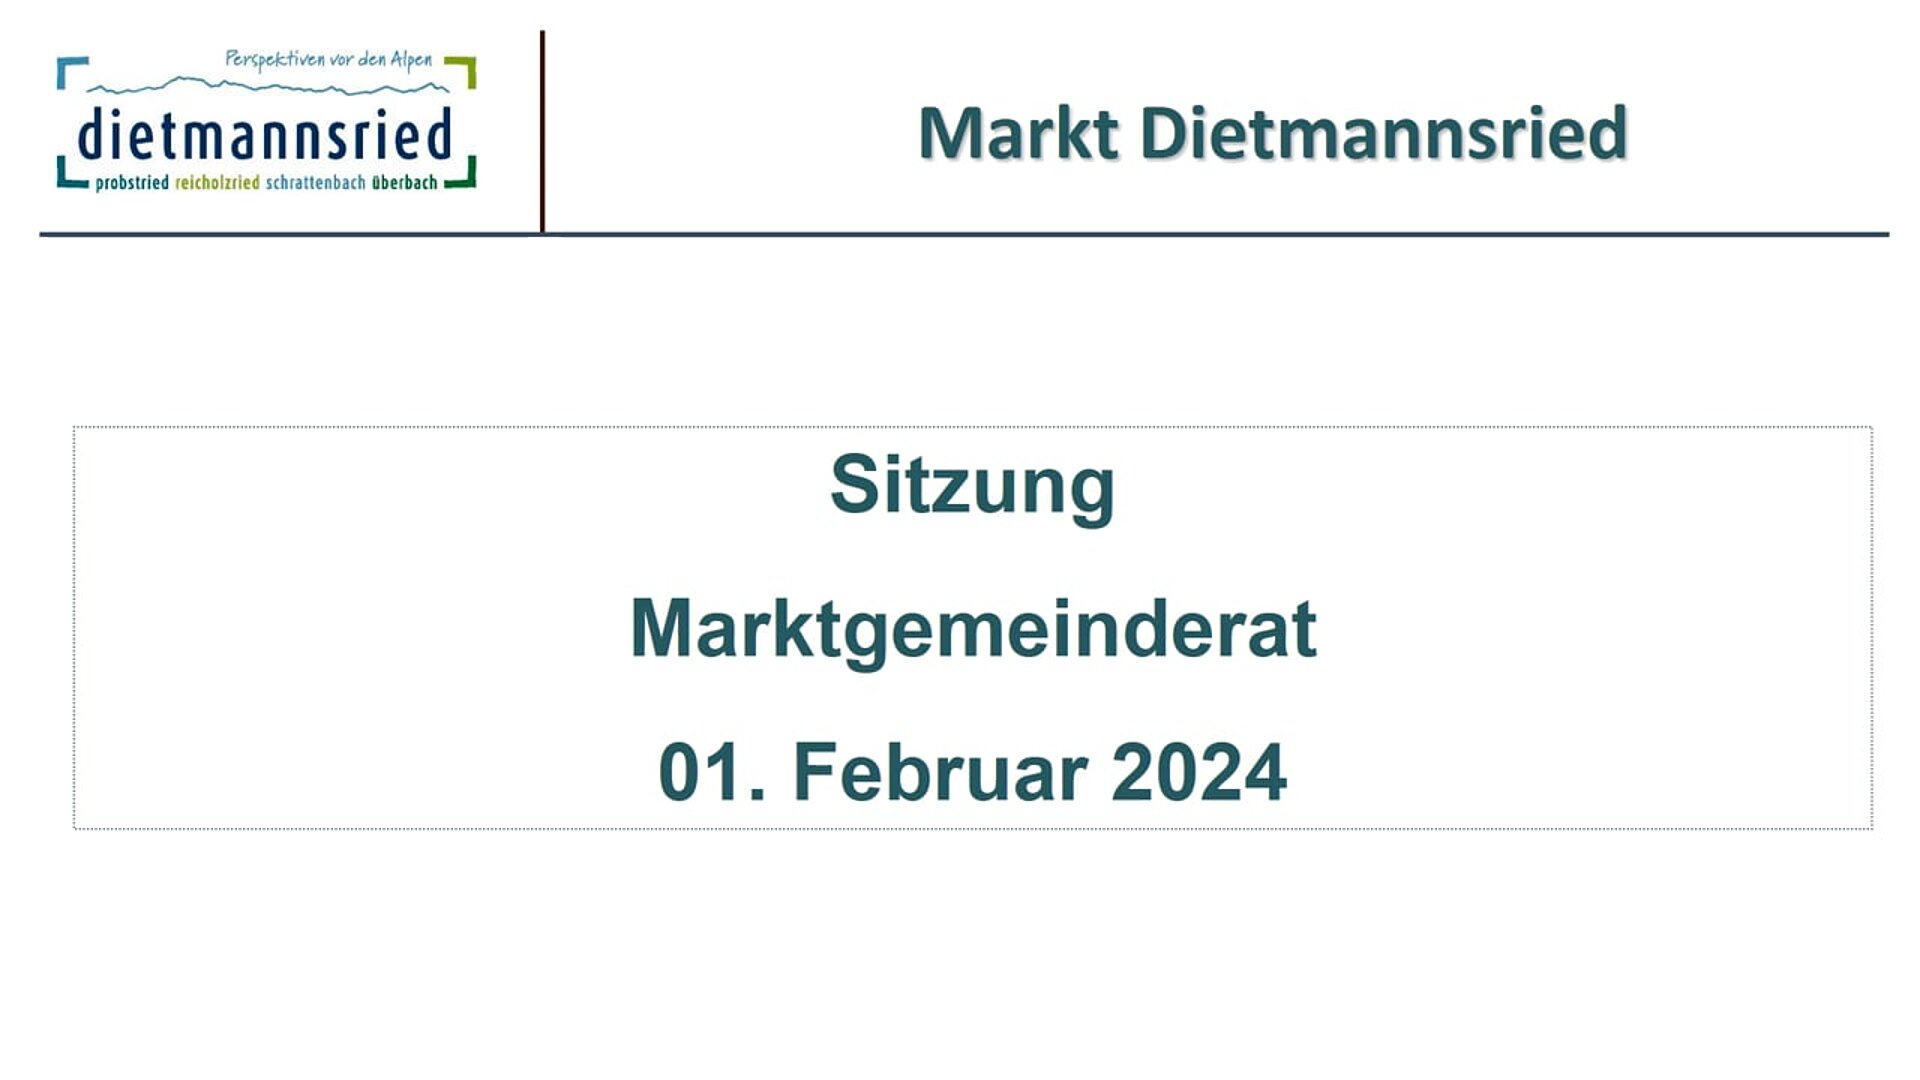 Sitzung Marktgemeinderat 01. Februar 2024